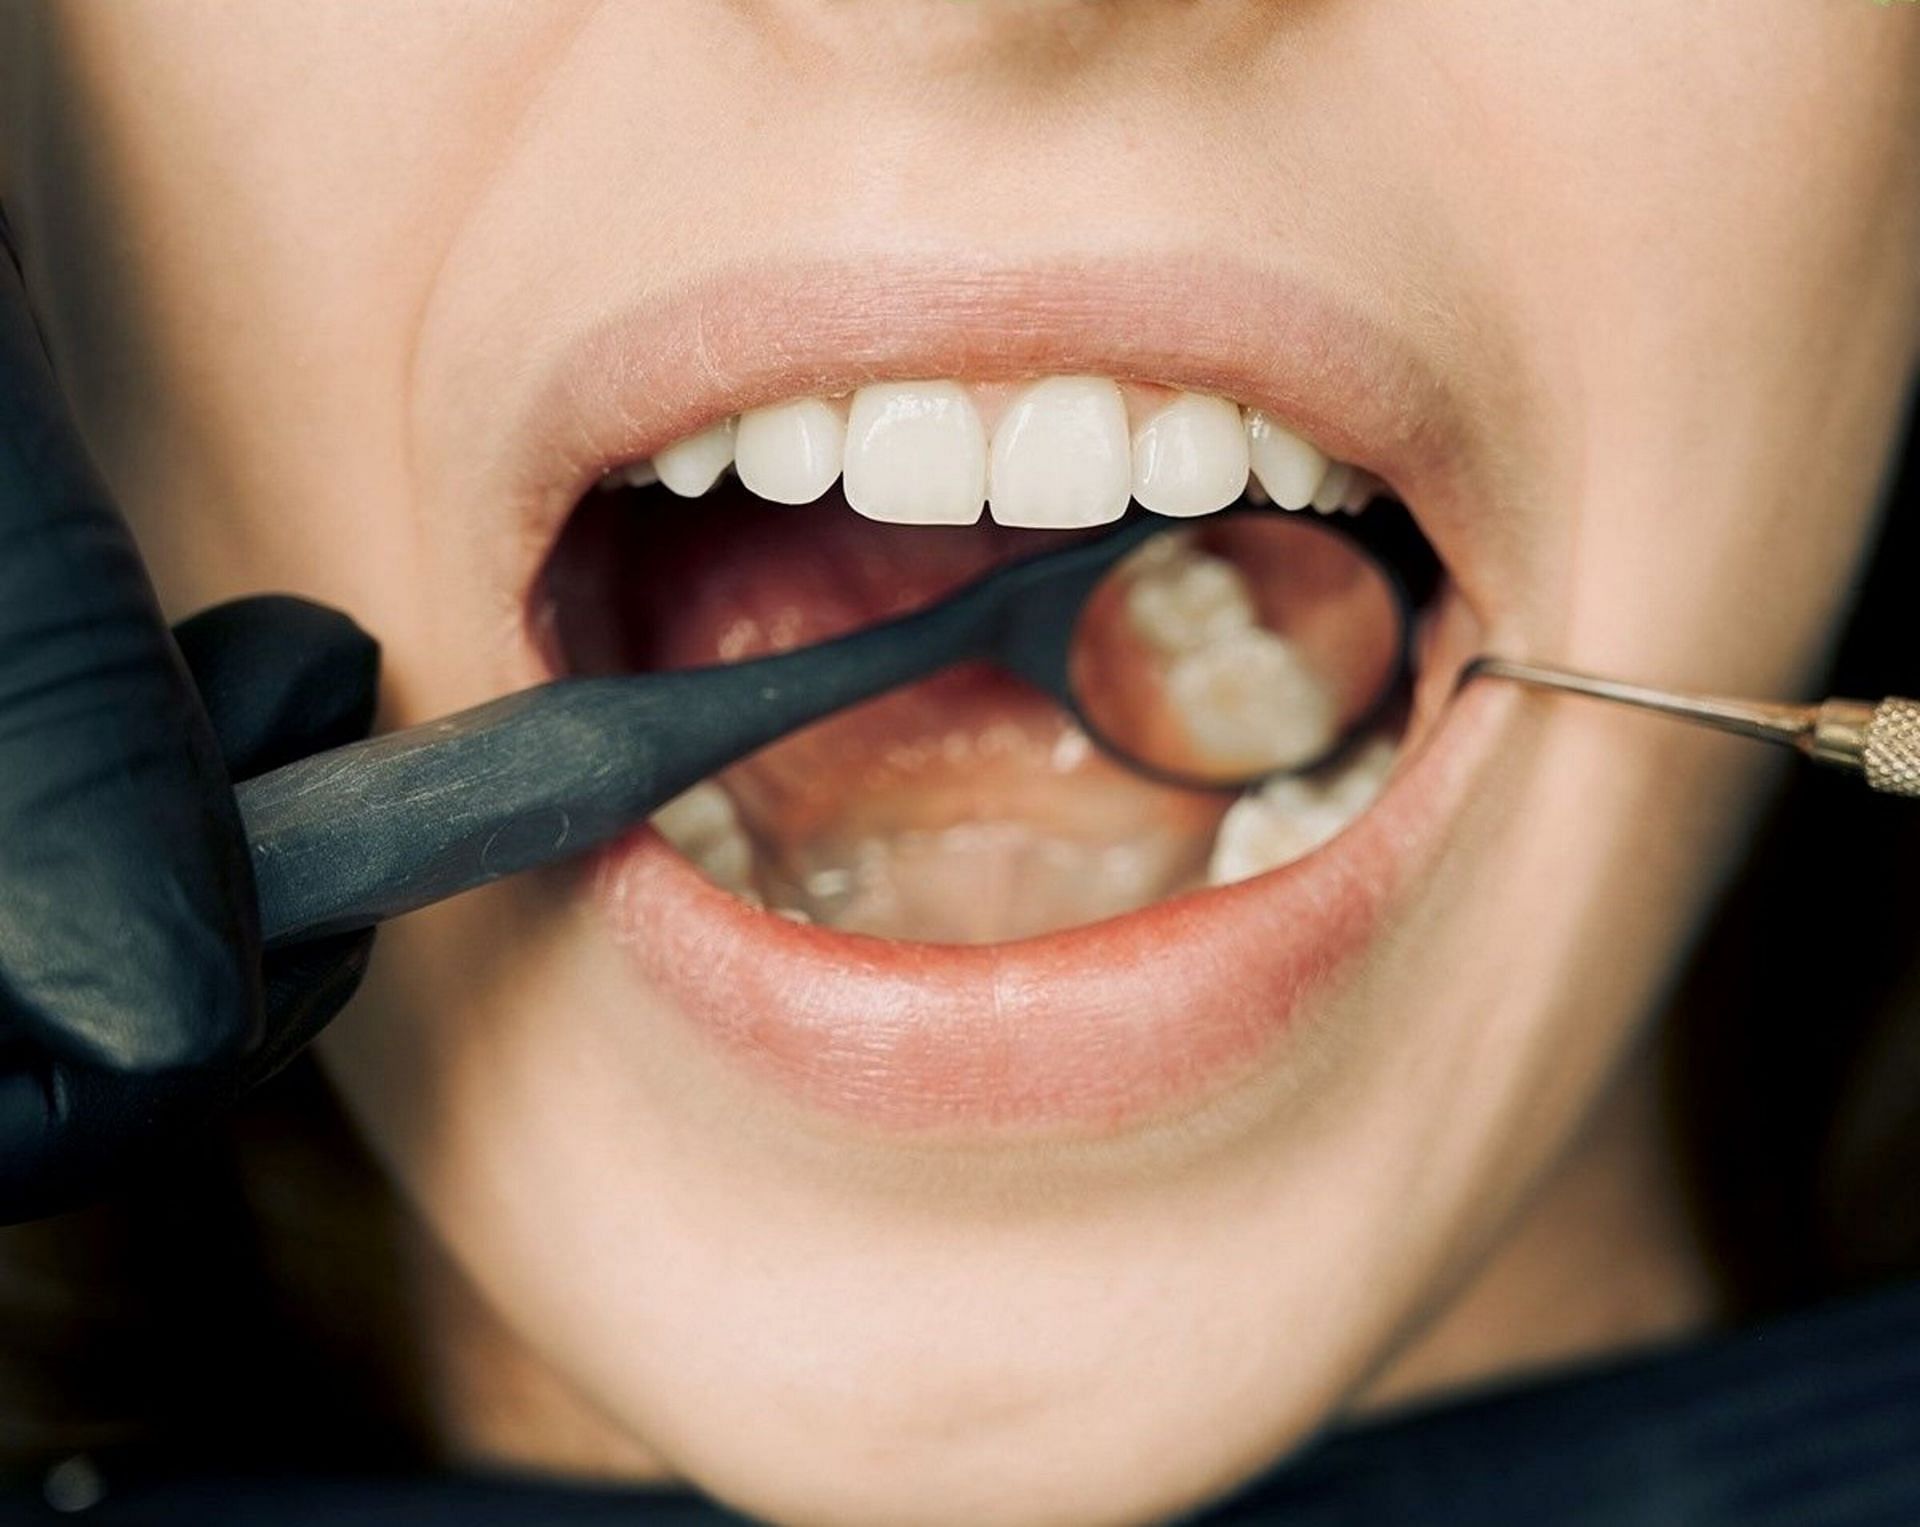 Doctor examining teeth (Image via Pexels)